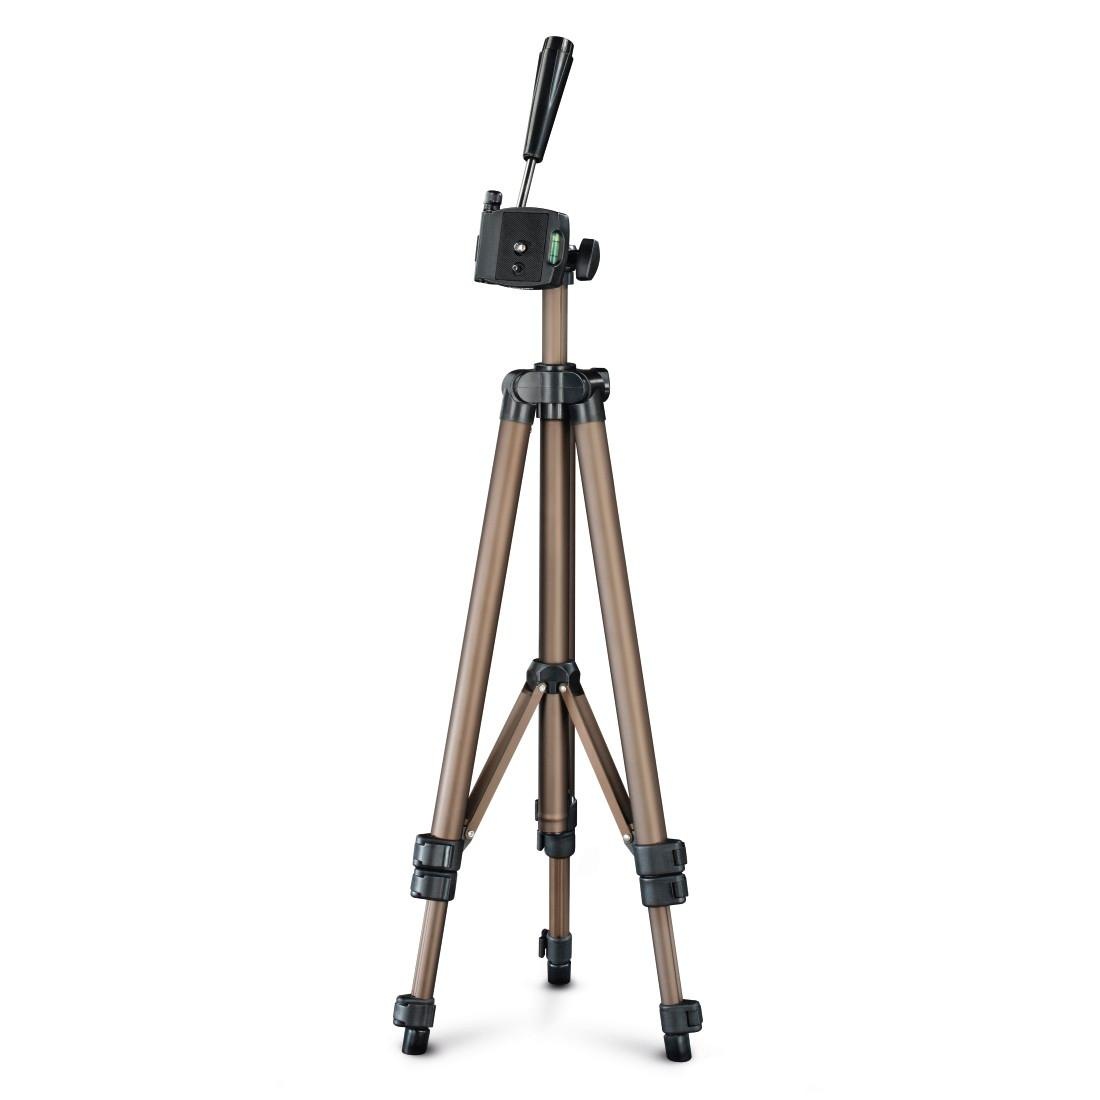 OTTO Fotostativ Hama bestellen Dreibeinstativ Kamera 3-Wege-Kopf Stativ EF »Dreibein jetzt Star700 42,2-125cm« bei